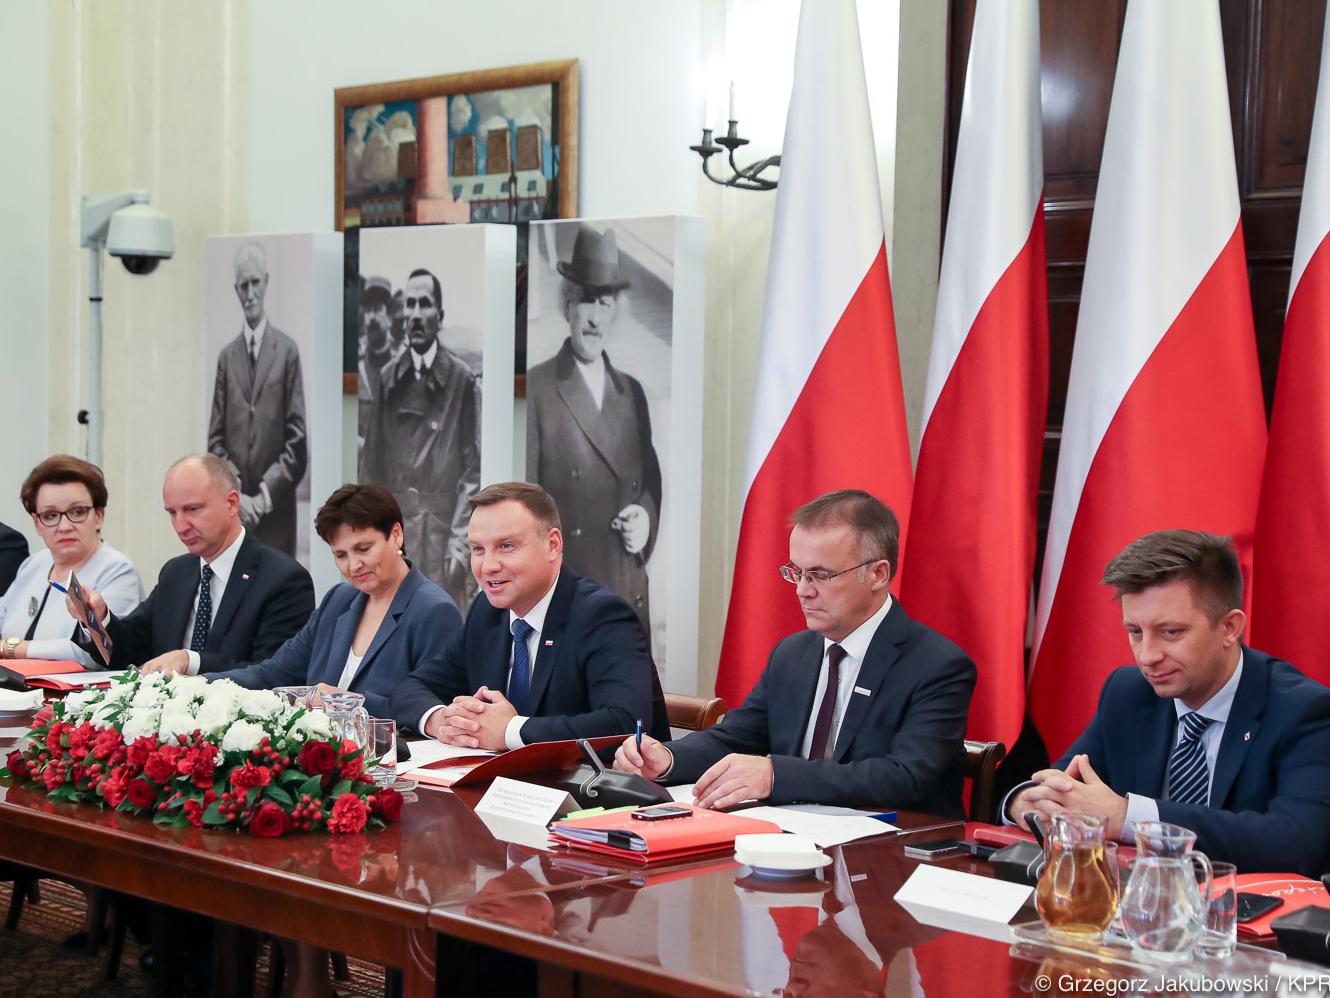 Prezydent Andrzej Duda ogłosił nazwiska 25 osób, które 11 listopada 2018 roku zostaną pośmiertnie uhonorowane Orderami Orła Białego